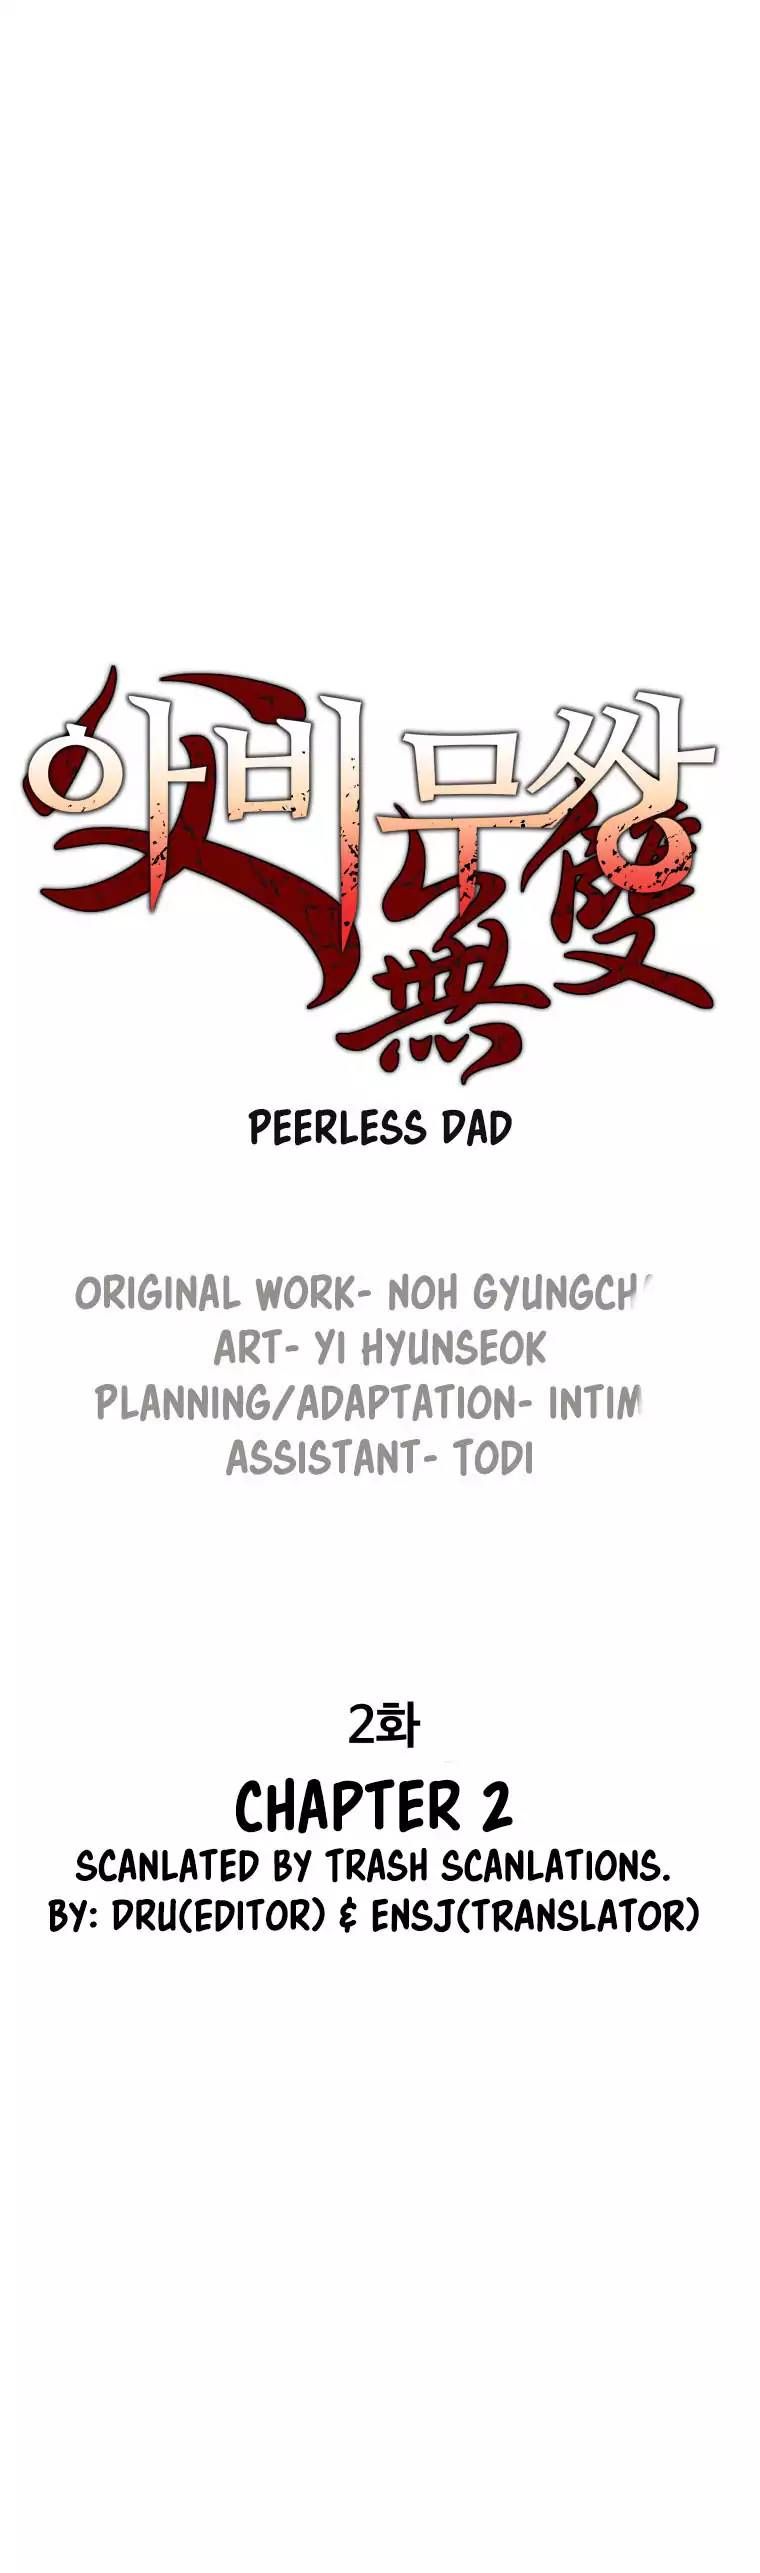 peerless_dad_3_1